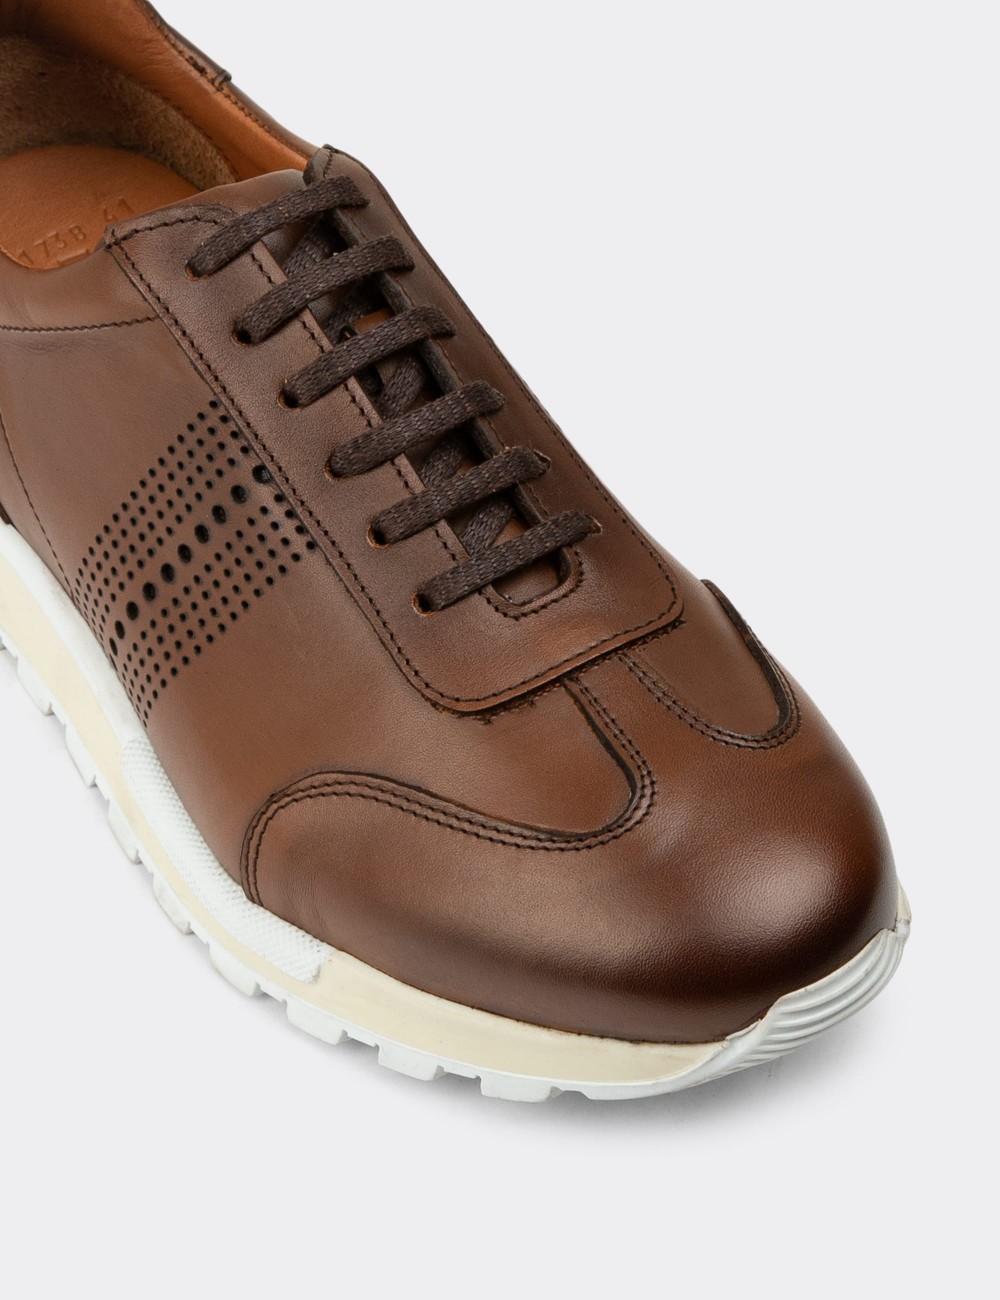 Tan Leather Sneakers - 01738MTBAT03